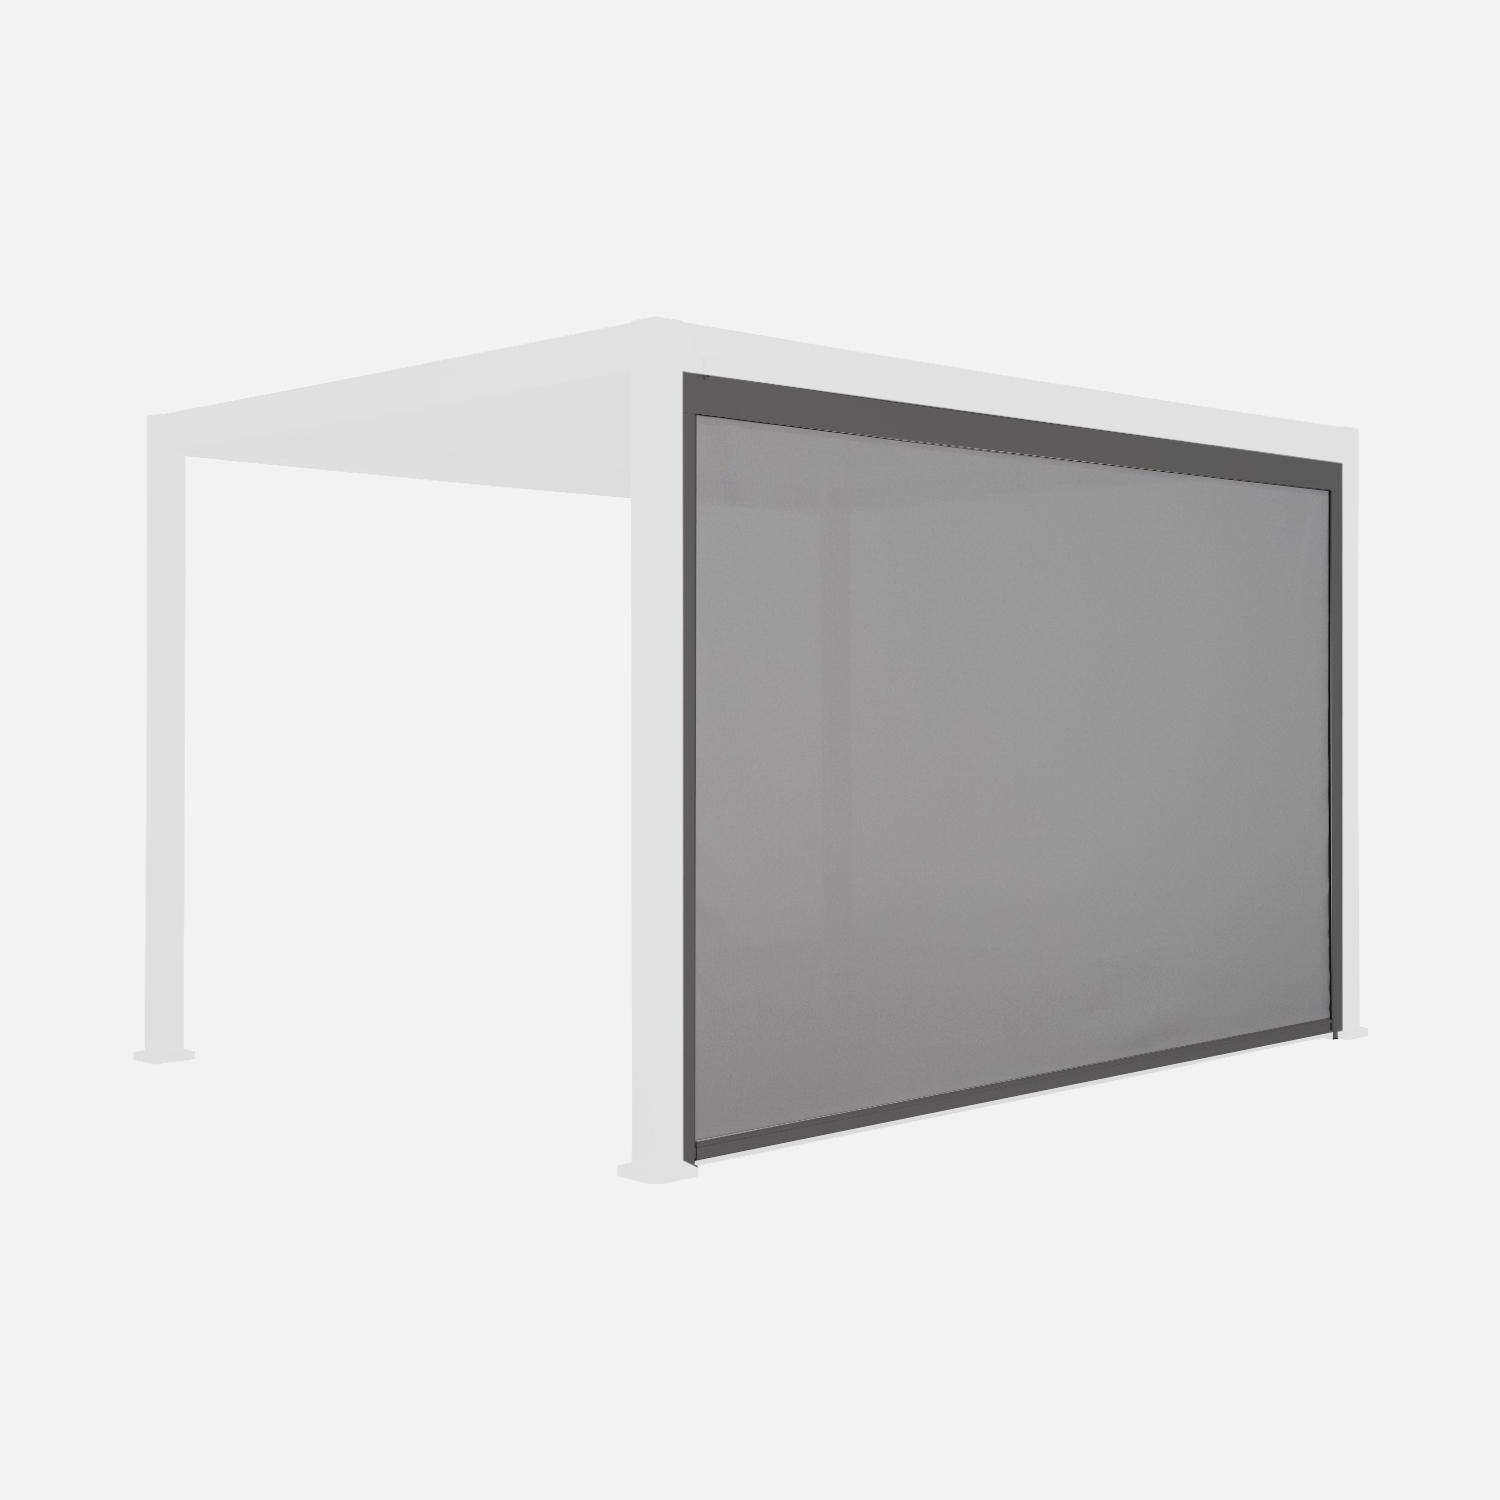 Store gris pour pergola bioclimatique – Triomphe – 3x4 m, aluminium et textilène,sweeek,Photo2